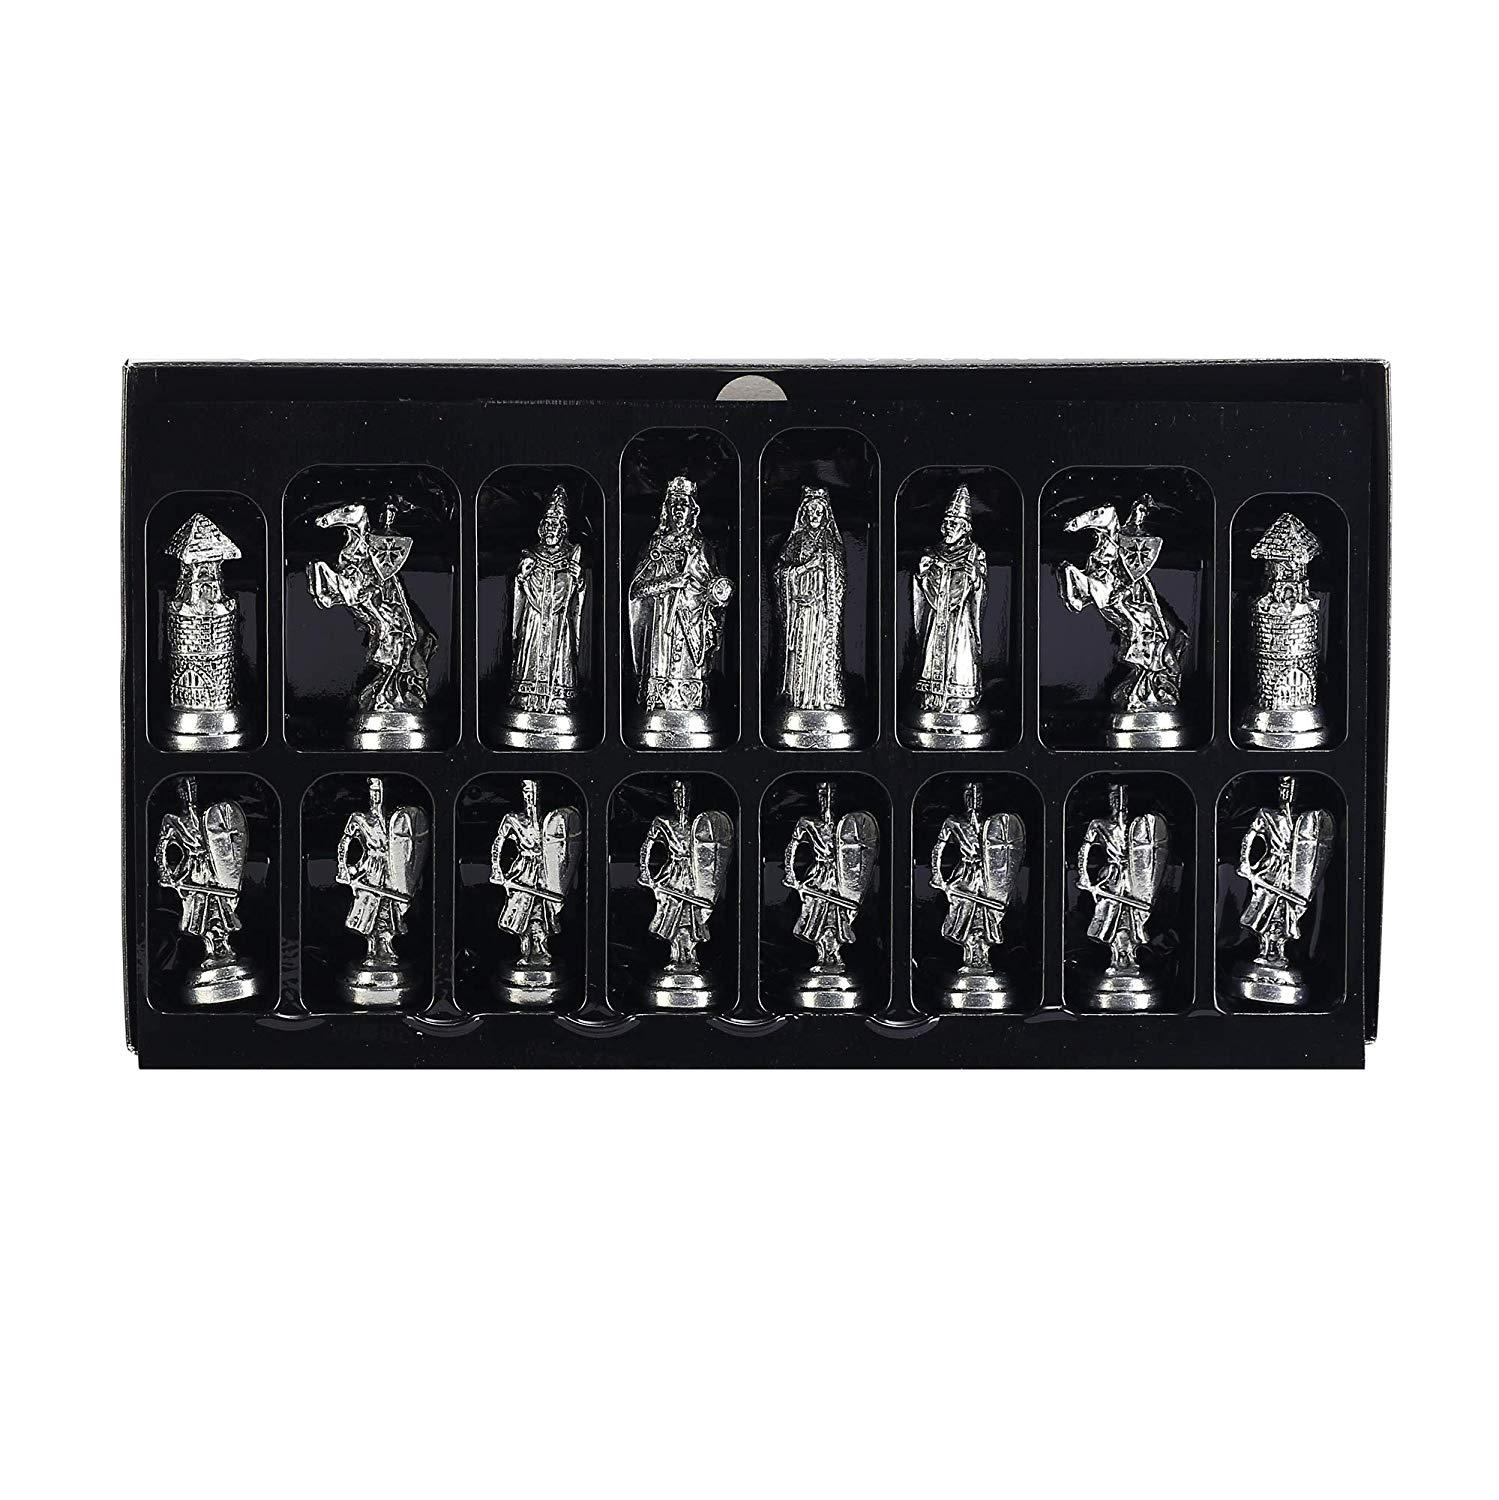 Изображение товара: Набор фигурок в стиле Оттоманской византийской, набор металлических шахматных фигурок ручной работы, шахматная доска из натурального твердого дерева, оригинальный жемчуг на борту, король, 7,5 см